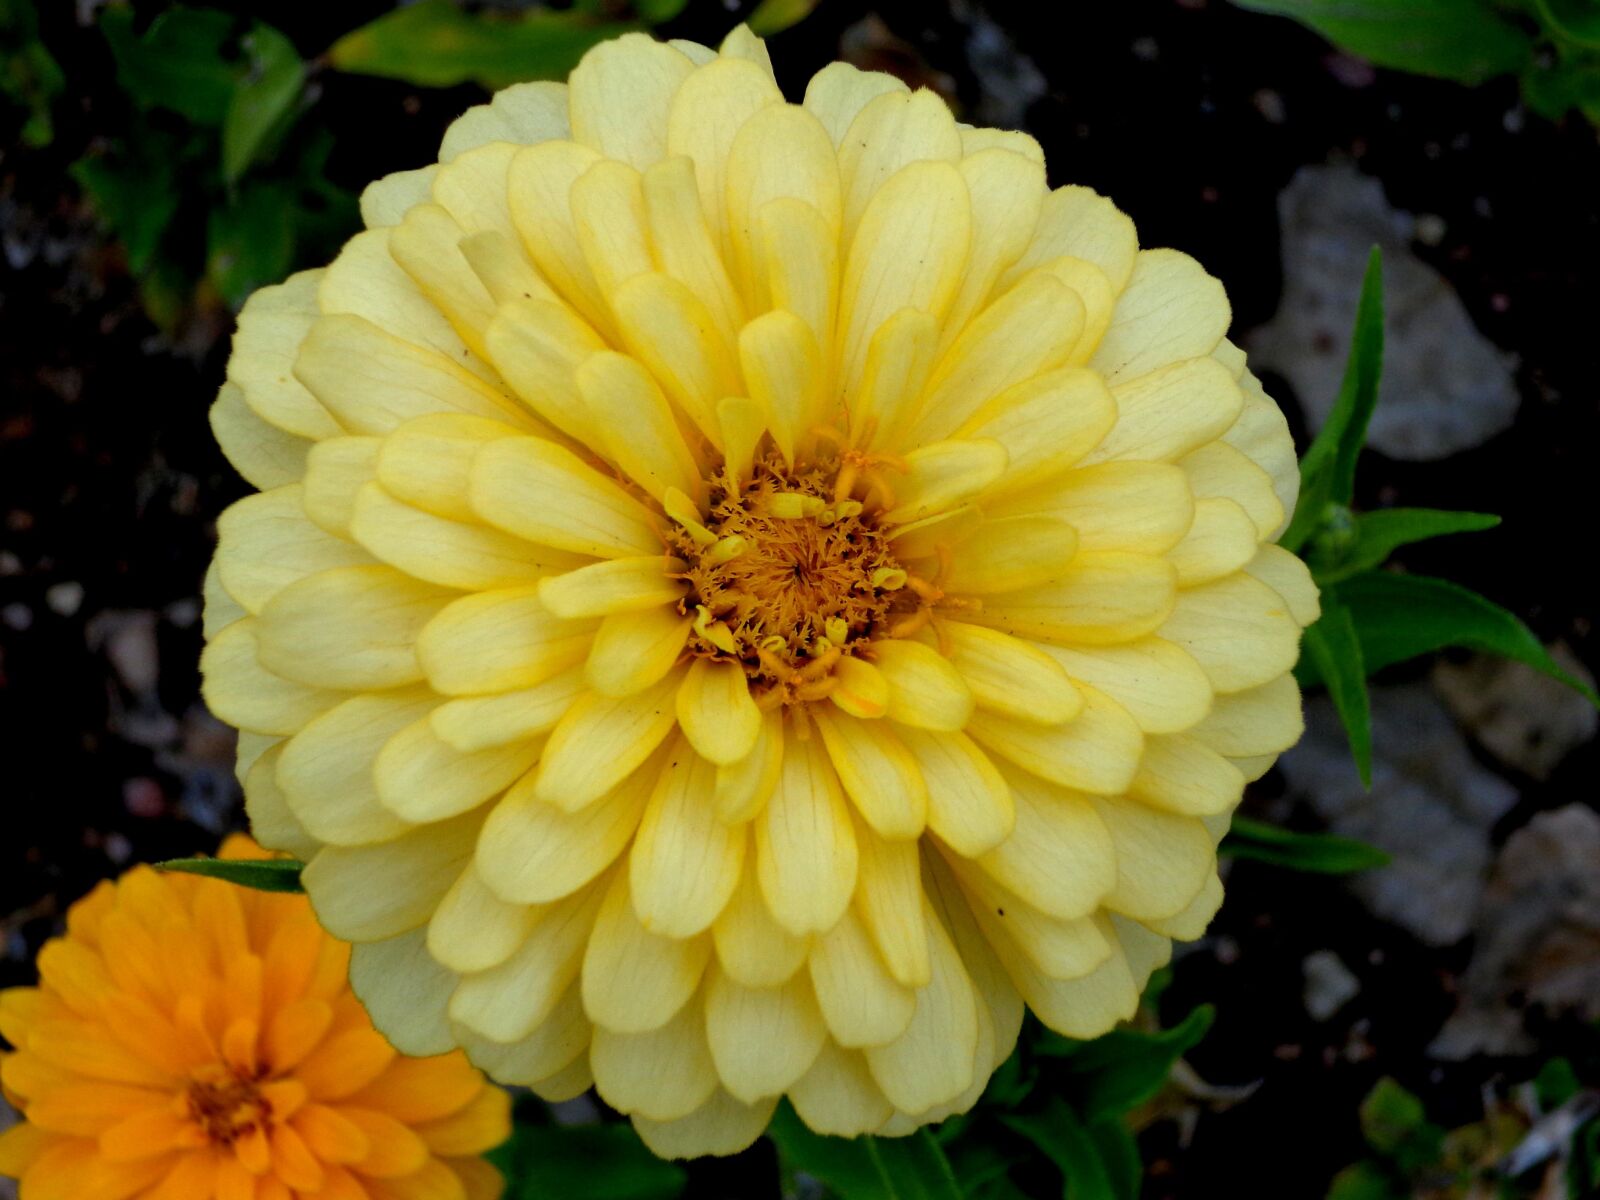 Sony DSC-W690 sample photo. "Yellow flower, zinnia flower" photography